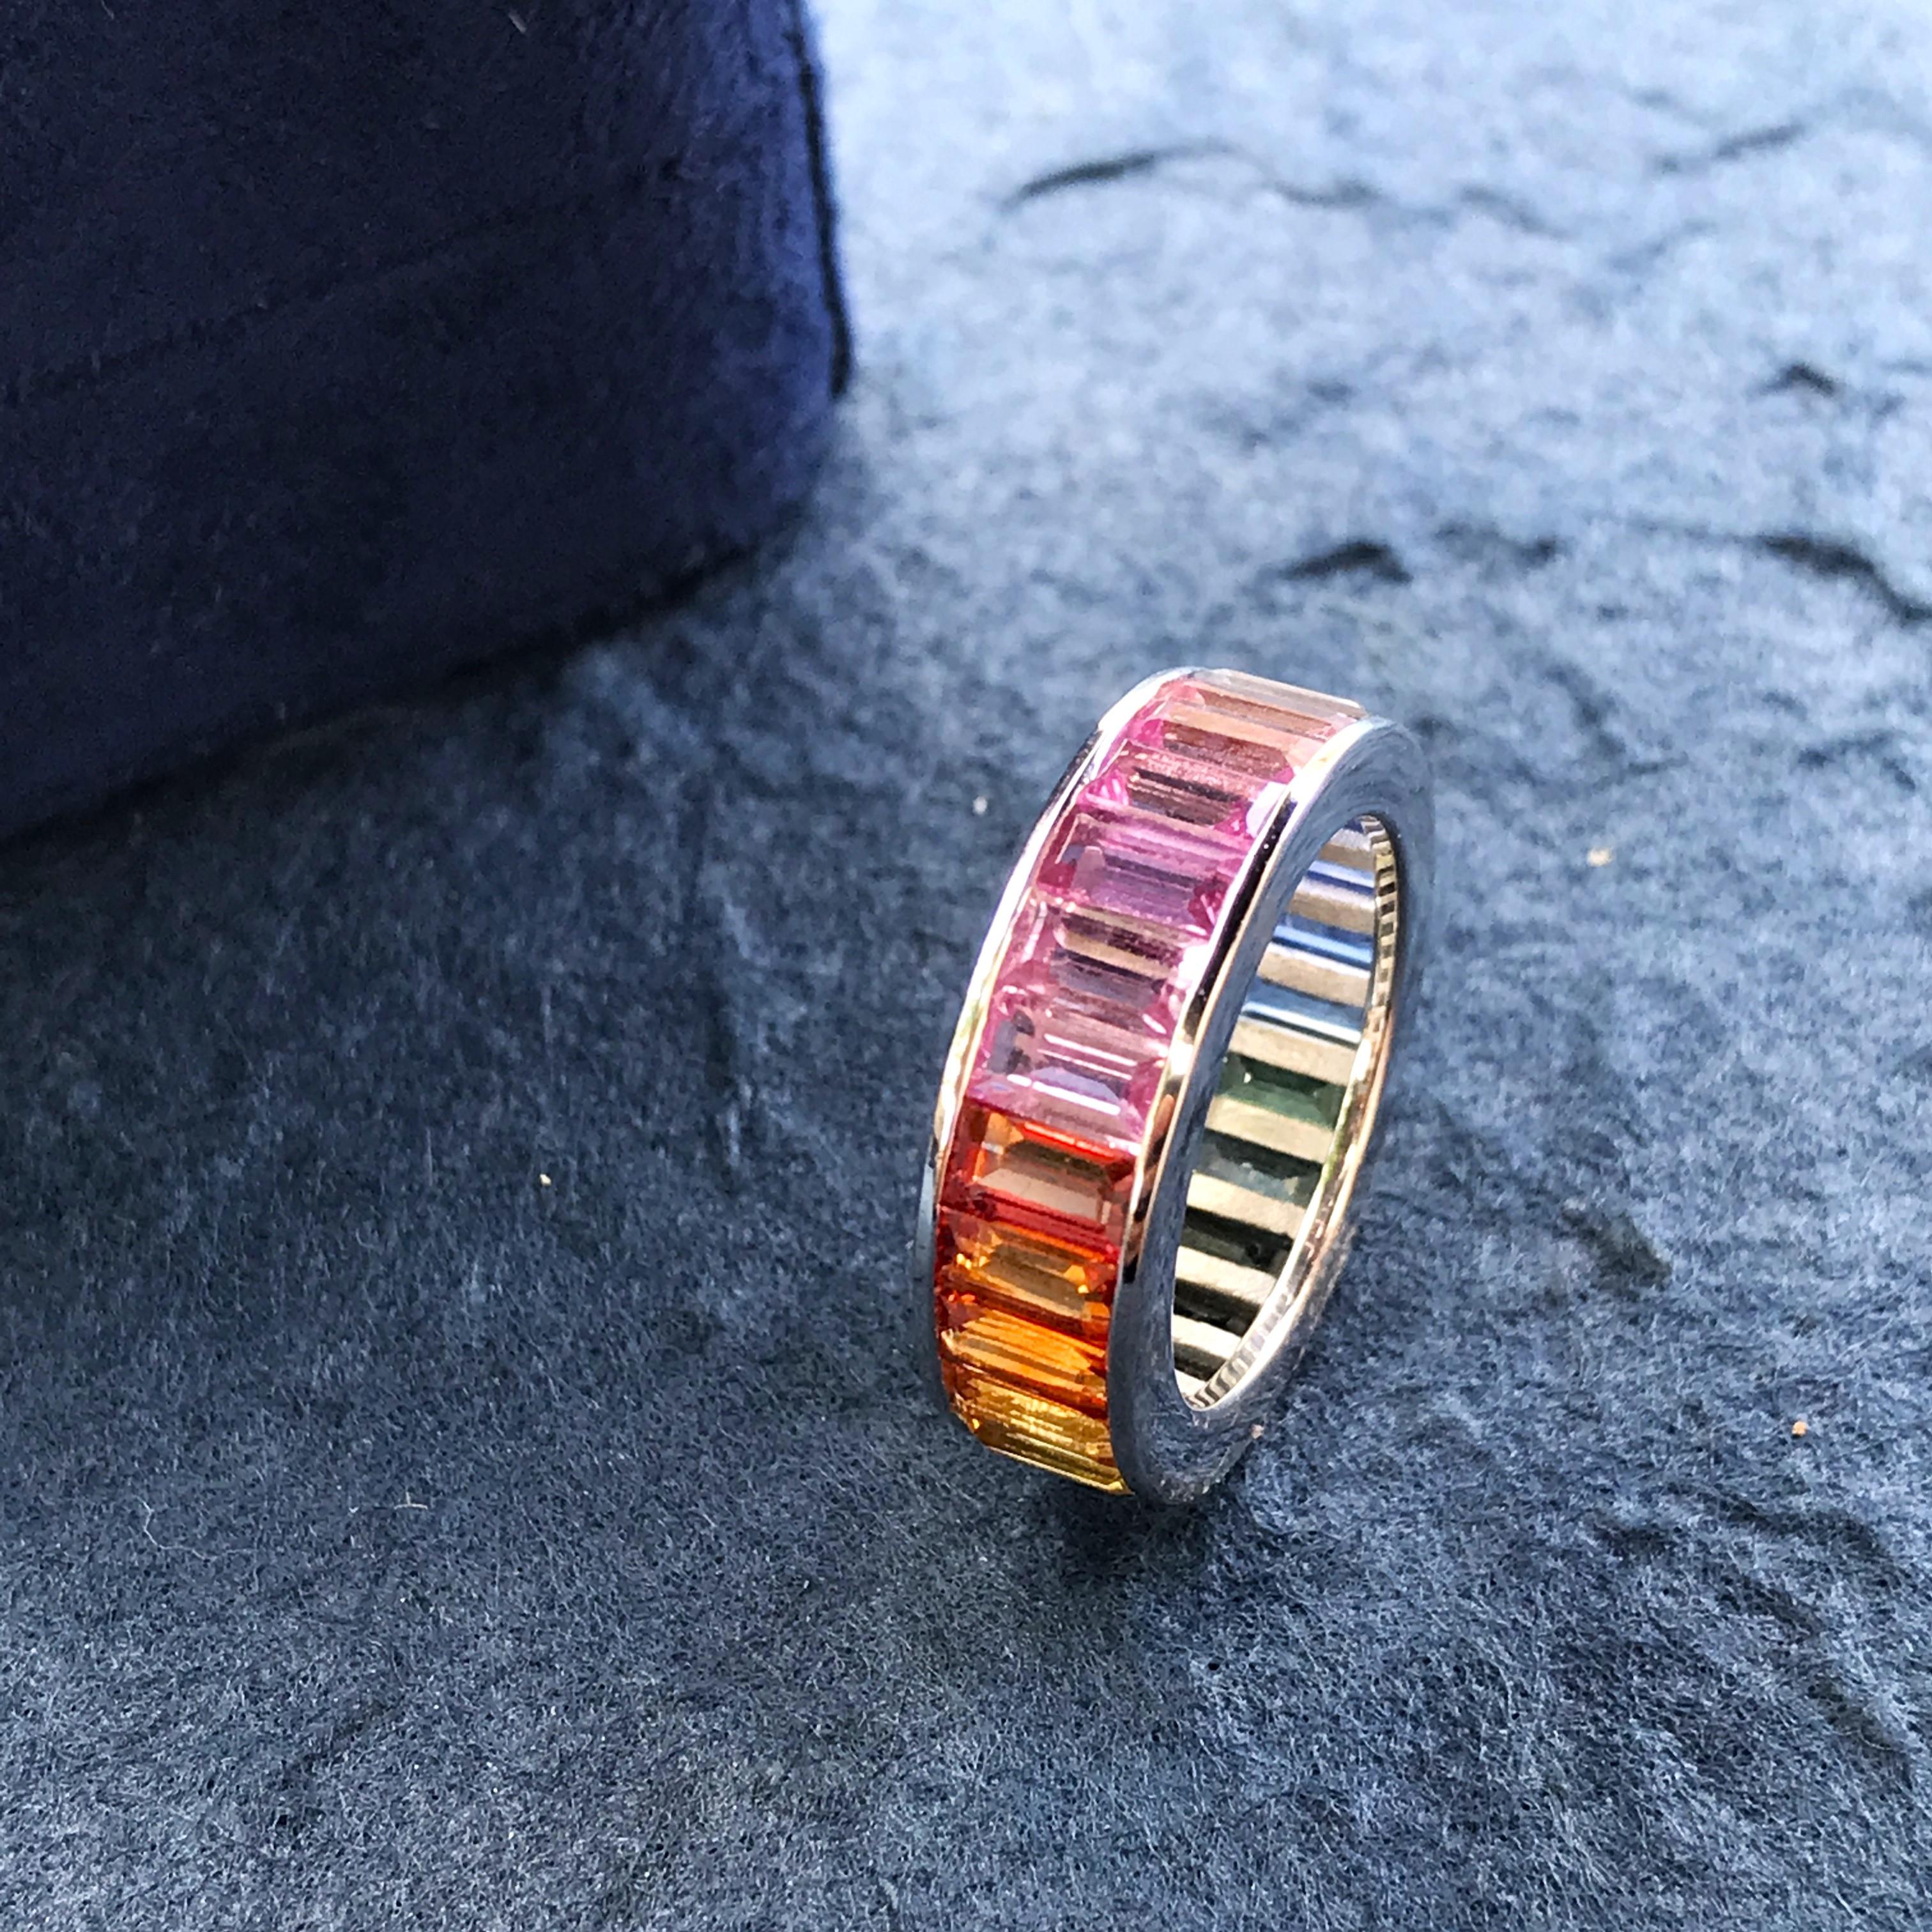 Ein Unisex-Ring, der jedes Outfit stilvoll aufwertet!

Dieses Ewigkeitsarmband mit Regenbogensaphir ist die perfekte Ergänzung zu Ihrer Kollektion. Vierundzwanzig Regenbogensaphire im Baguetteschliff sind vertikal in18K Weißgold gefasst. Der Ring